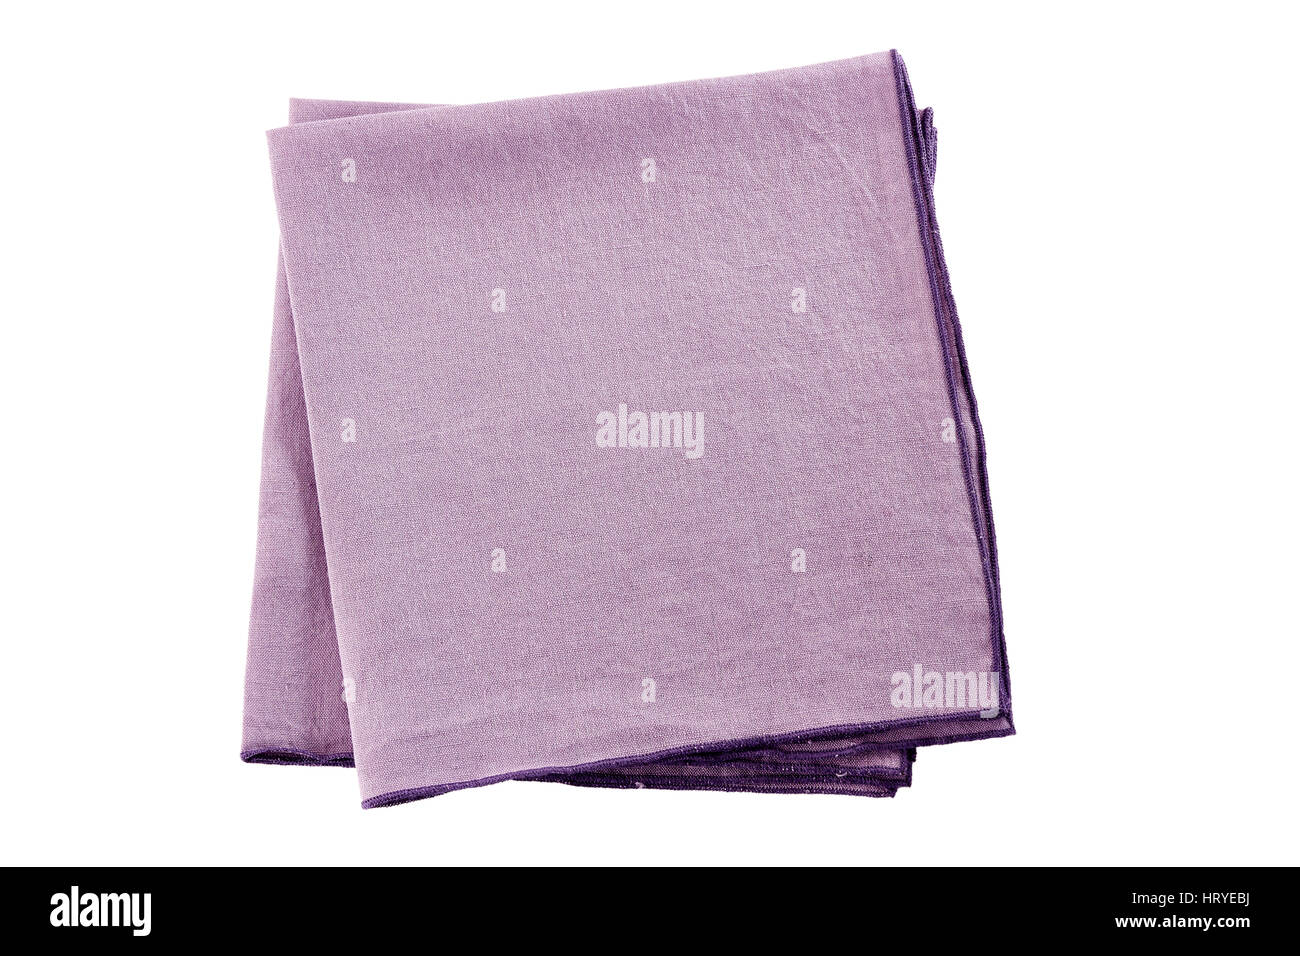 Two violet textile napkins on white Stock Photo